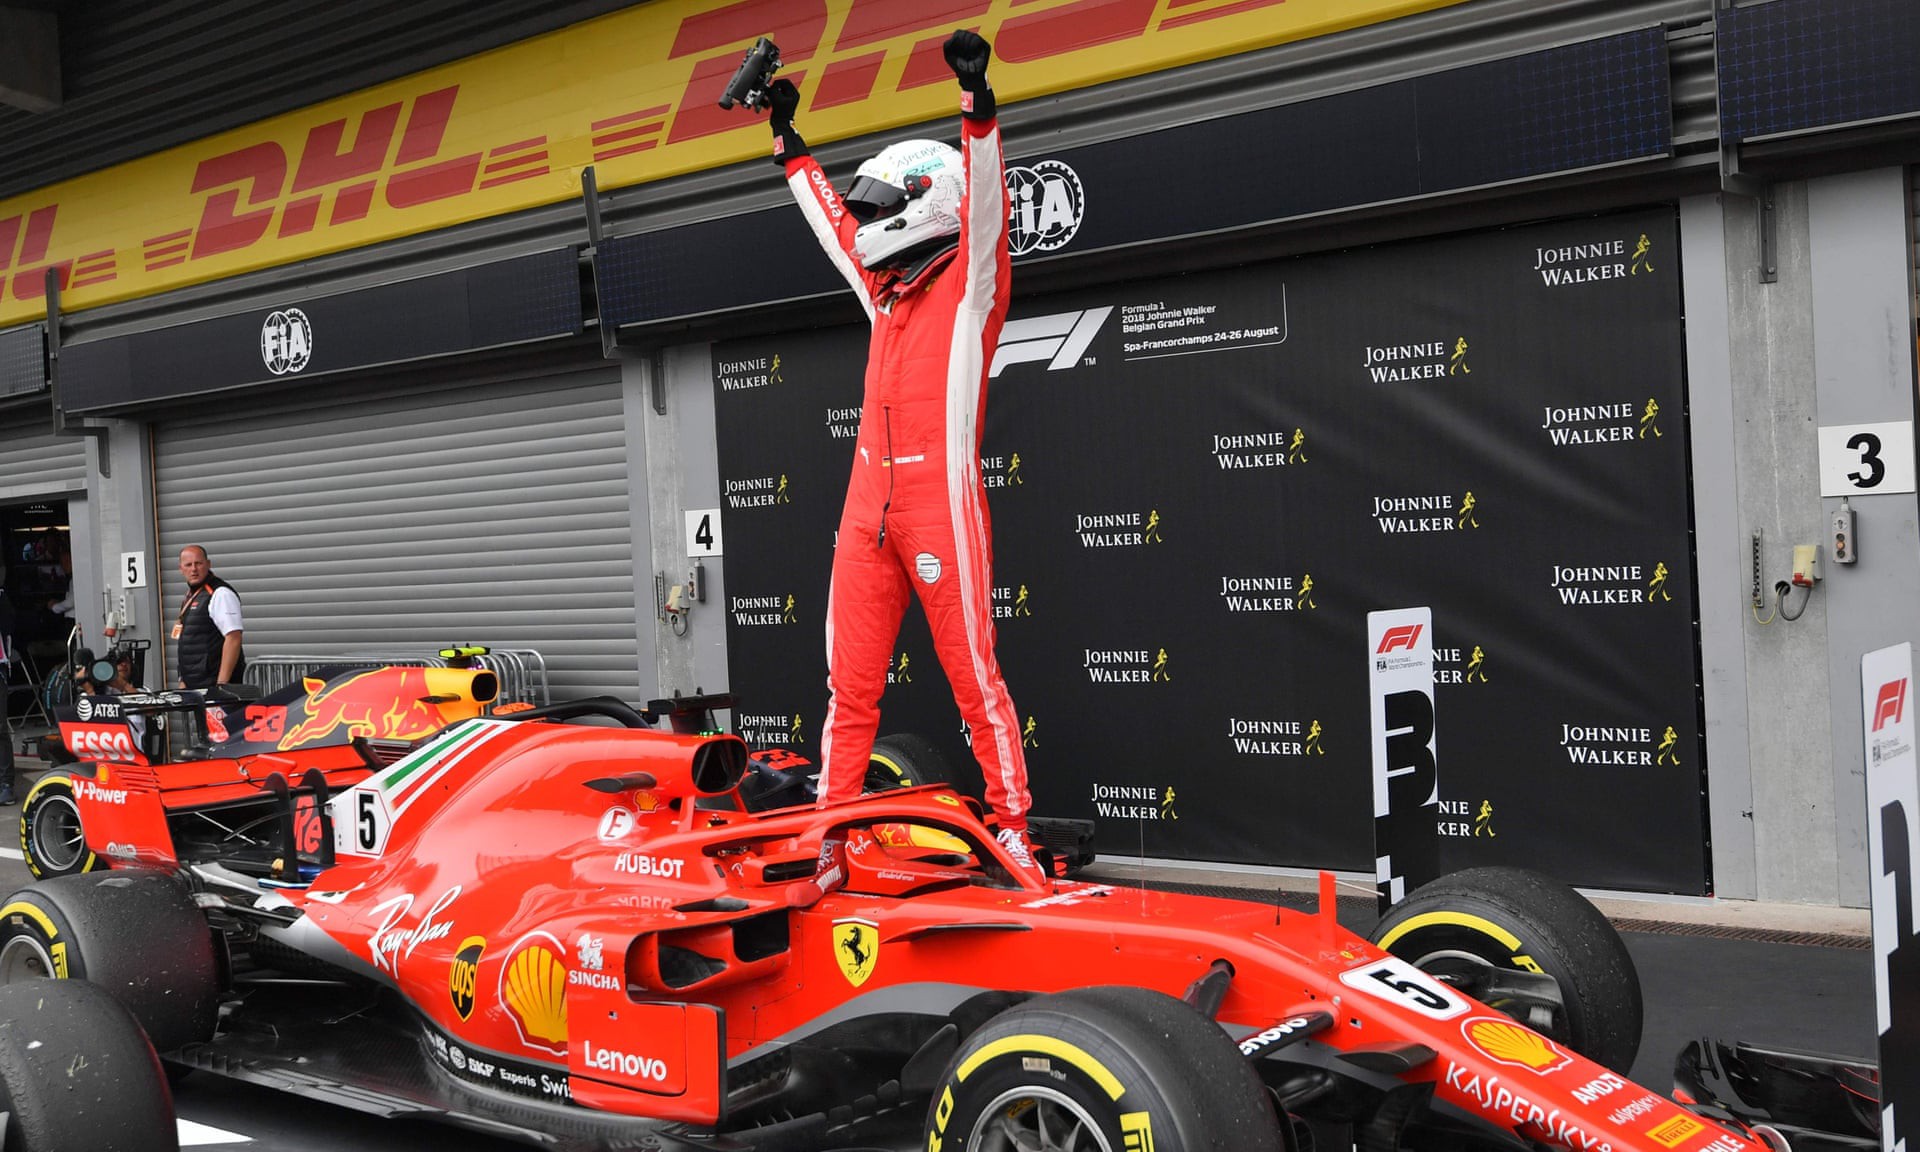 Belgian GP 2018: Vettel xuất sắc lên ngôi trong ngày tai nạn liên hoàn - Ảnh 2.